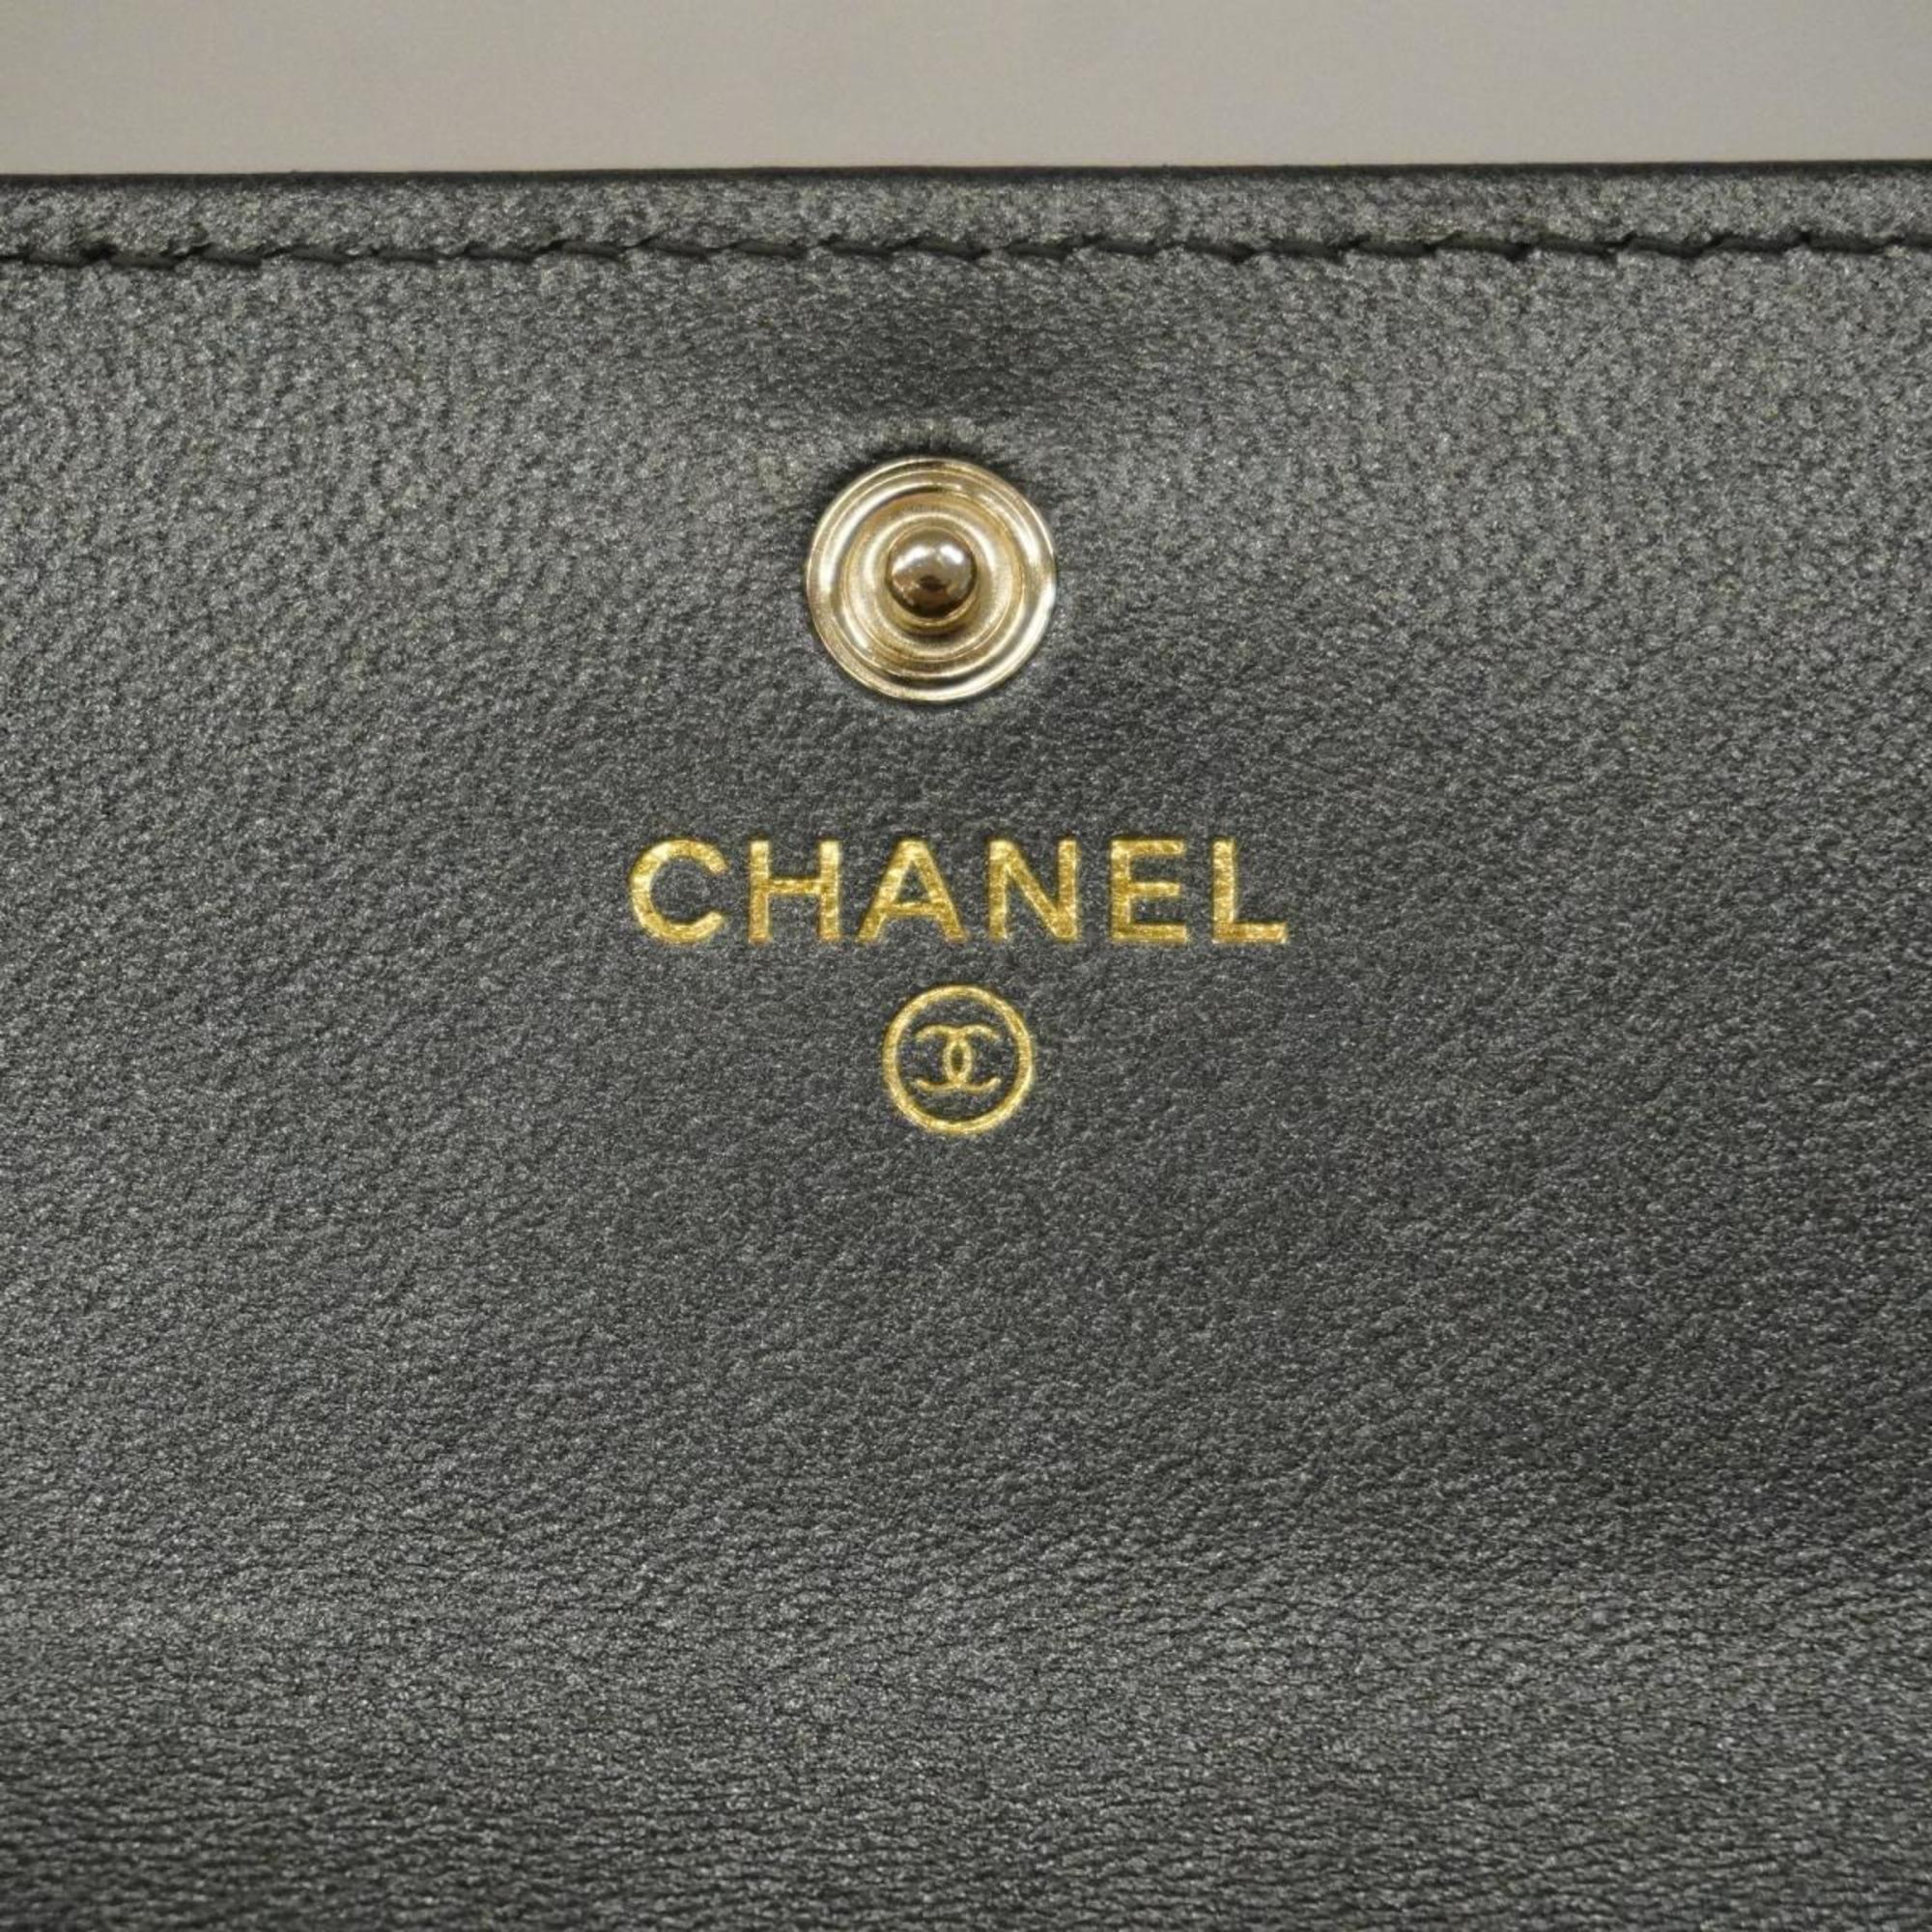 シャネル(Chanel) シャネル 長財布 マトラッセ ラムスキン グレー シャンパン  レディース